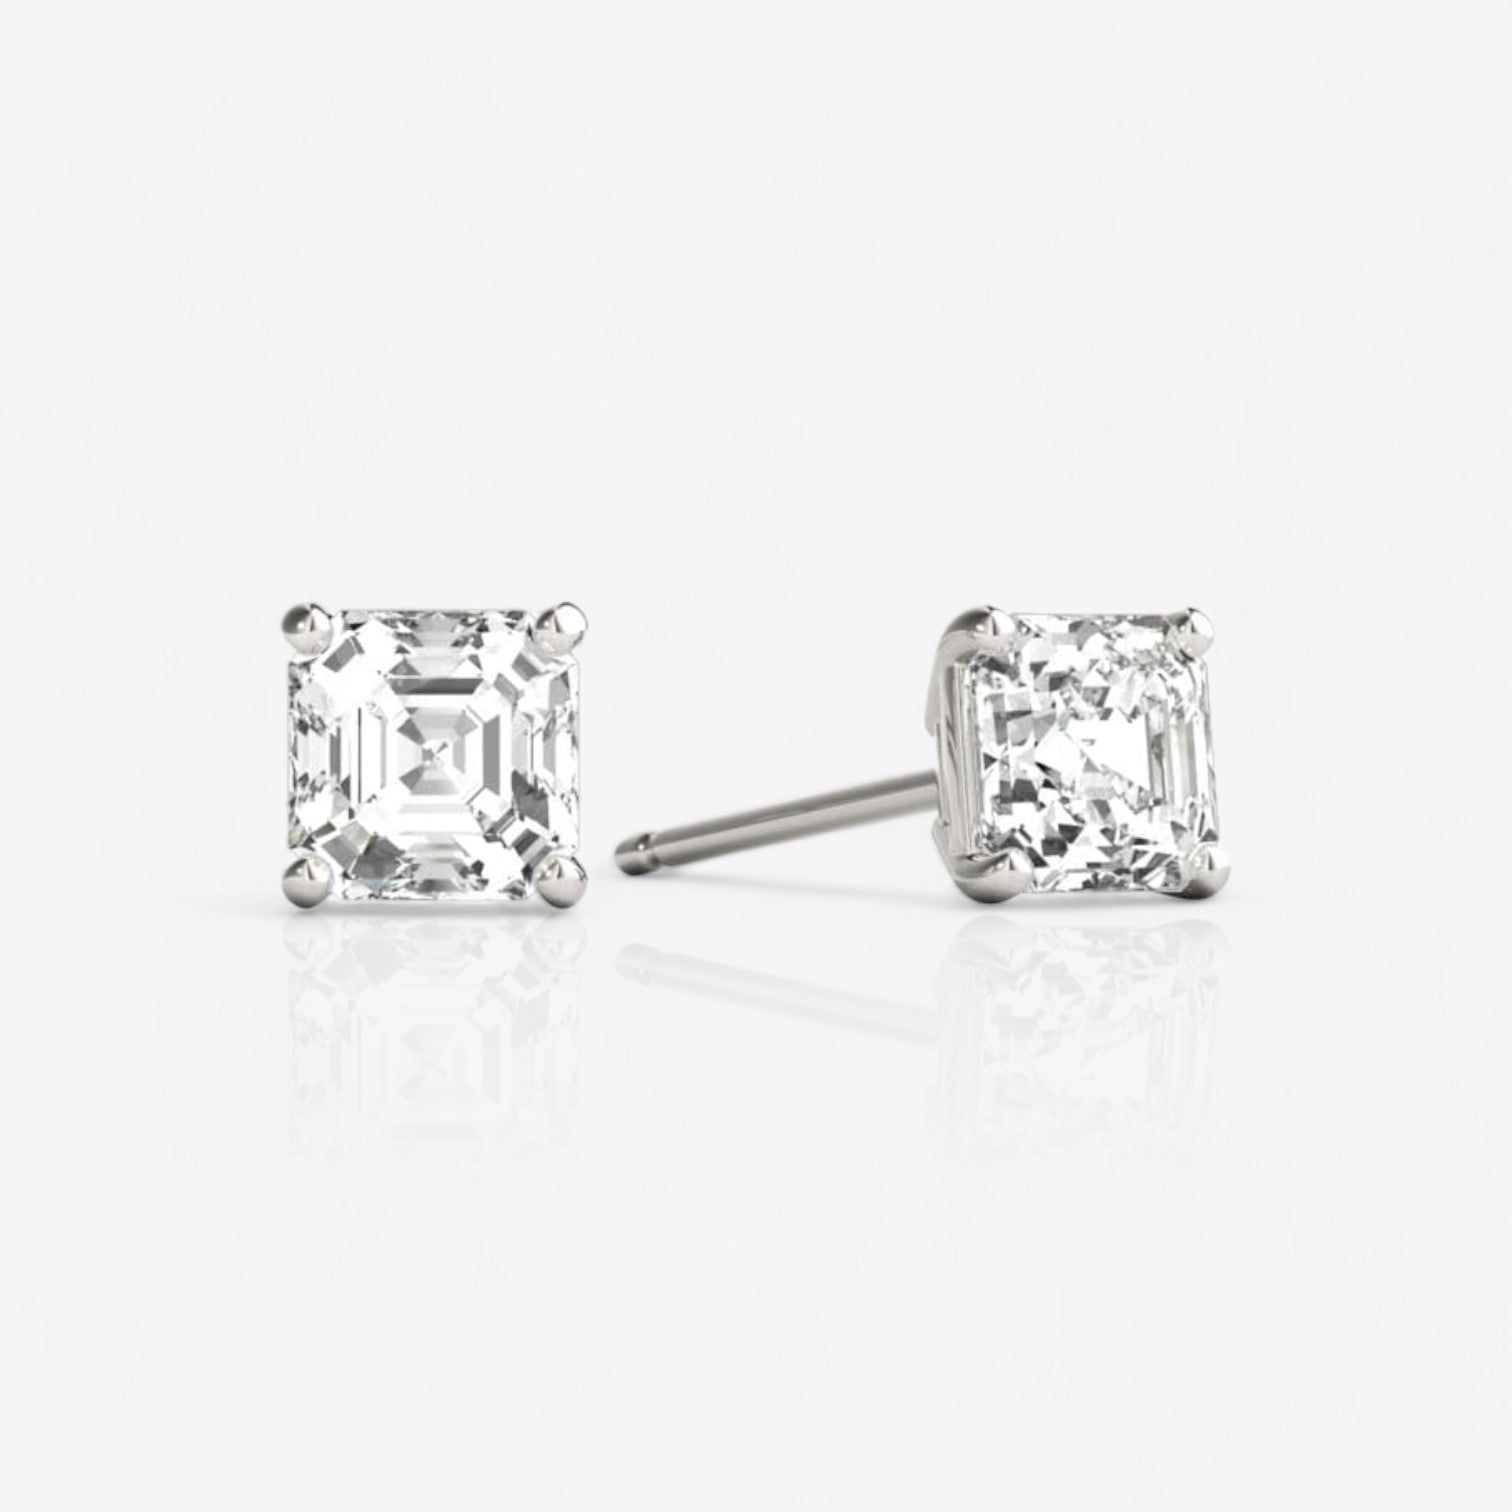 Asscher Cut Four-Prong Diamond Stud Earrings